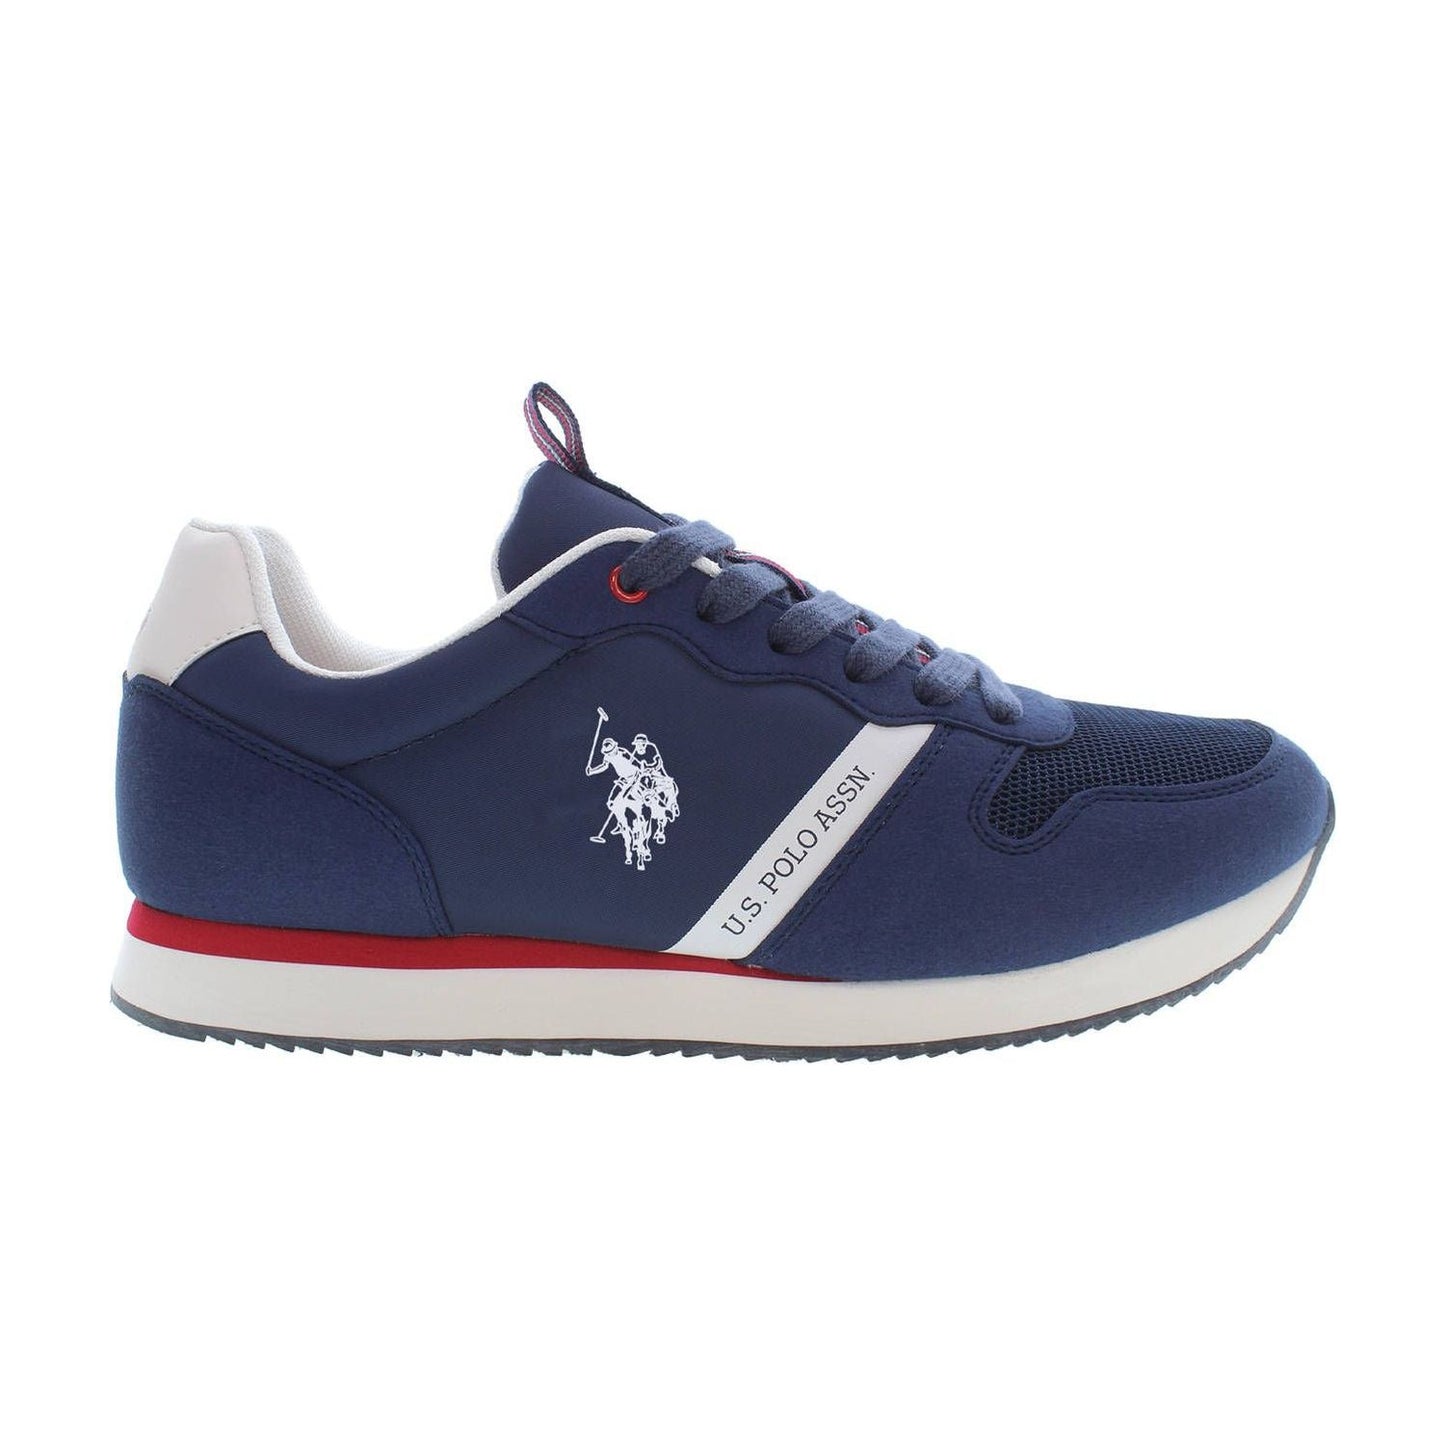 U.S. POLO ASSN. Sleek Blue Lace-Up Sports Sneakers sleek-blue-lace-up-sports-sneakers-1